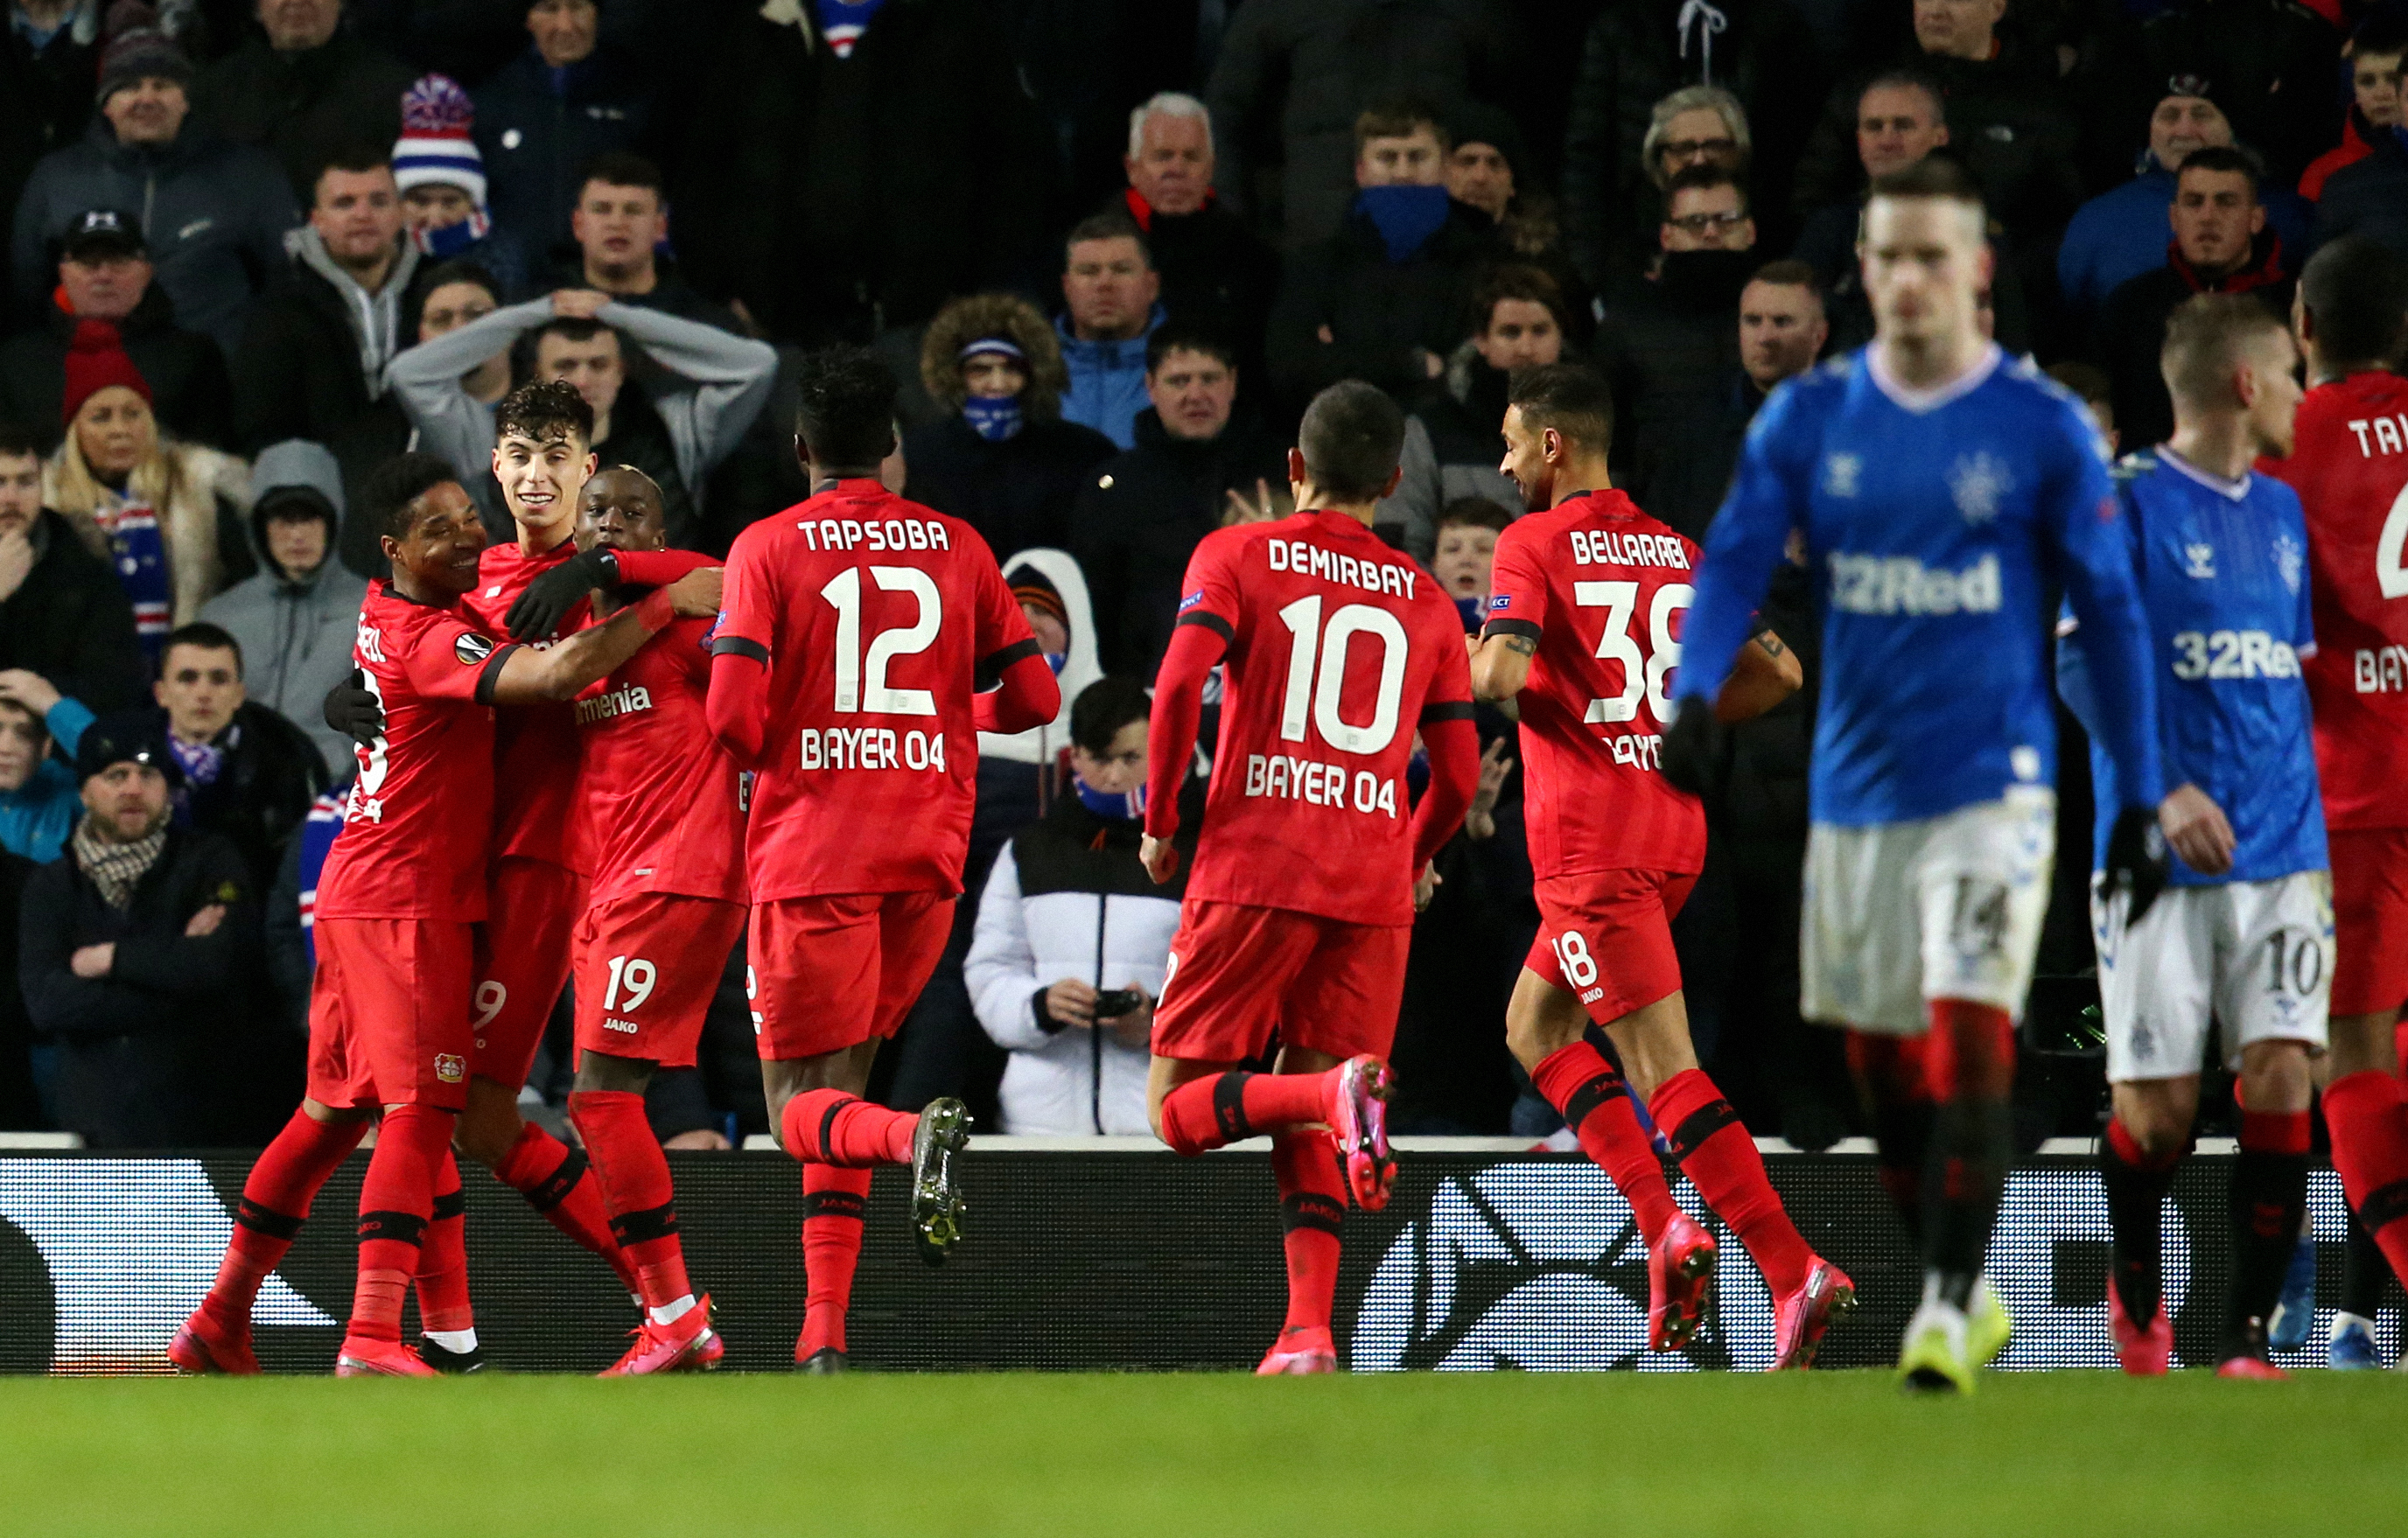 O Rangers terá de superar uma desvantagem de 3-1 frente ao Bayer Leverkusen para seguir em frente na Liga Europa